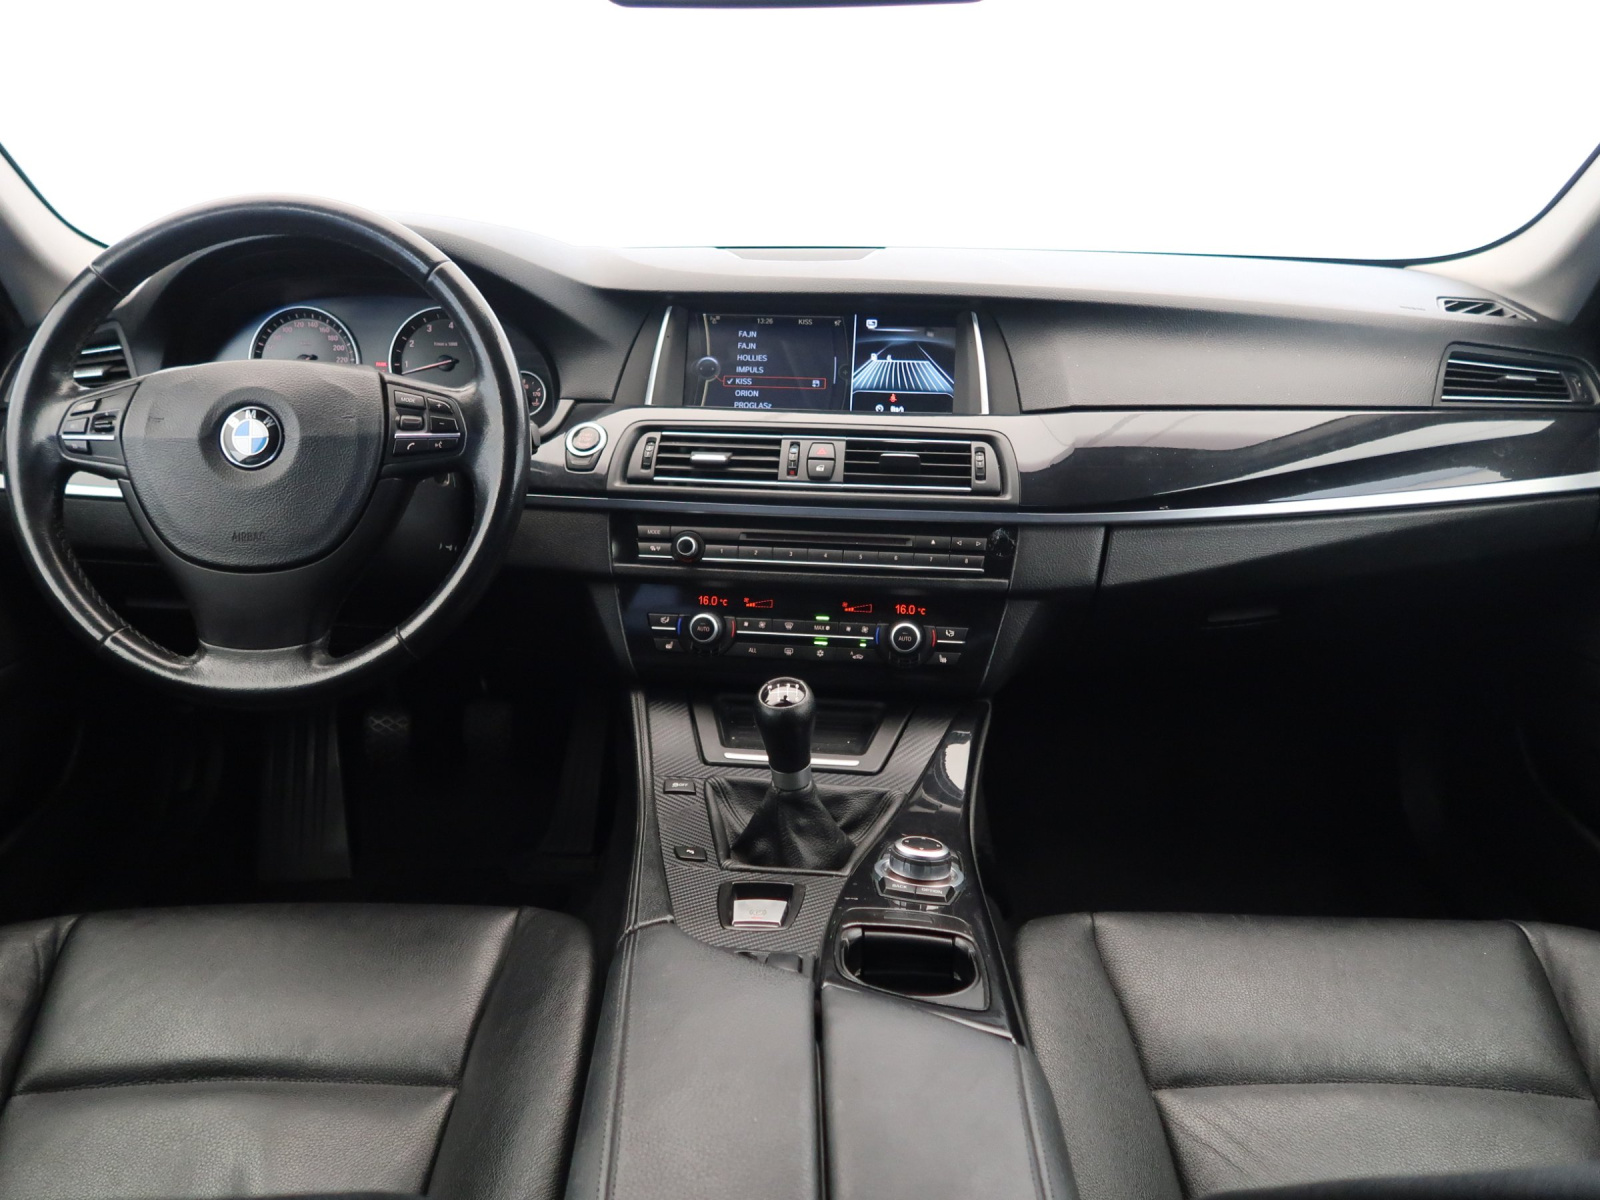 BMW 5, 2011, 523i, 150kW